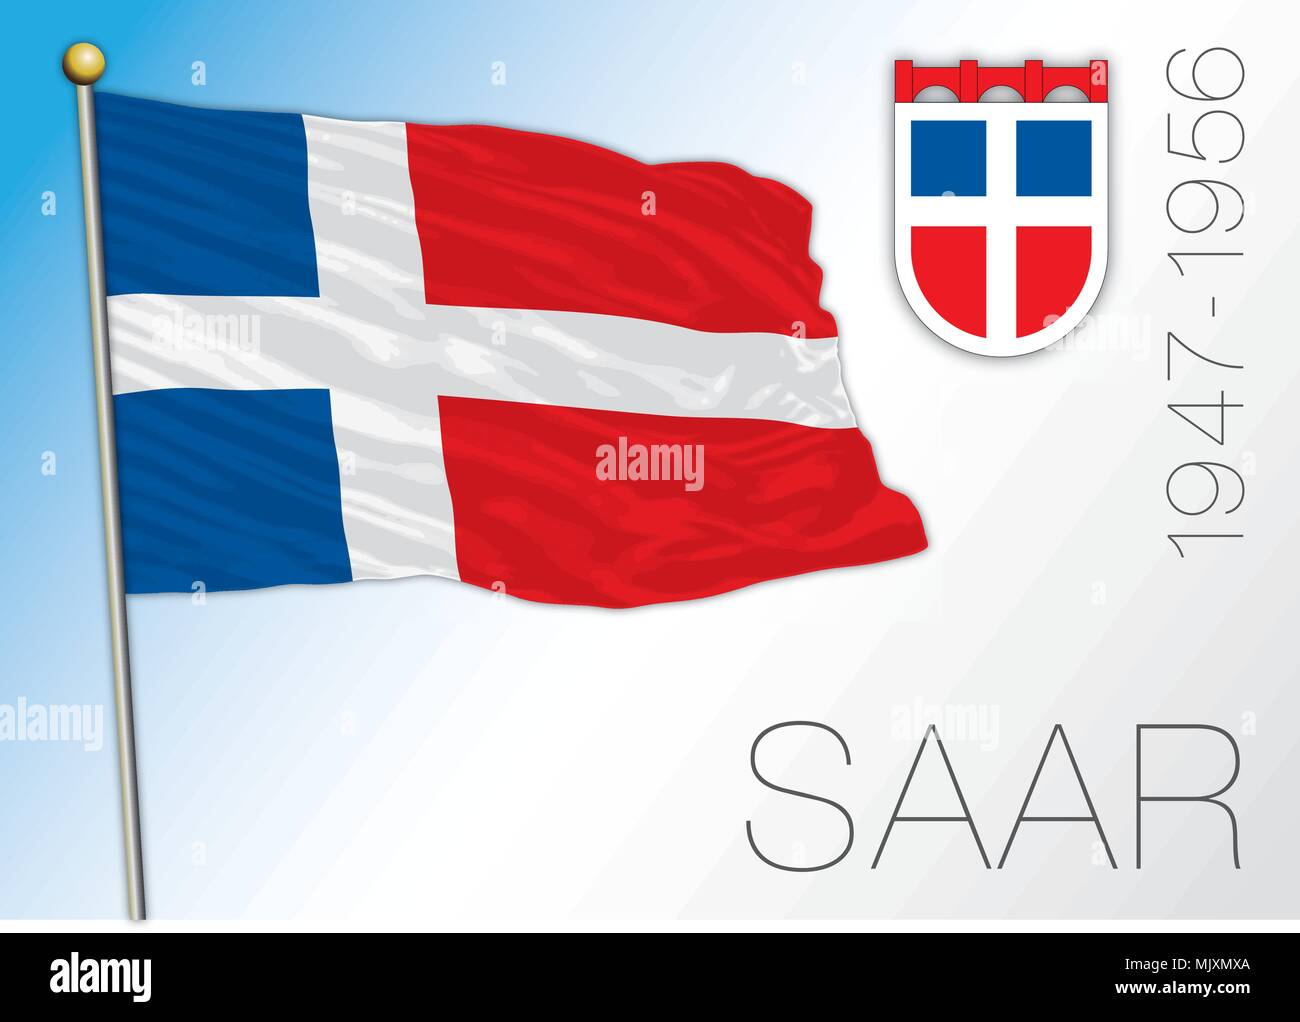 Saar european region historical flag and crest Stock Vector